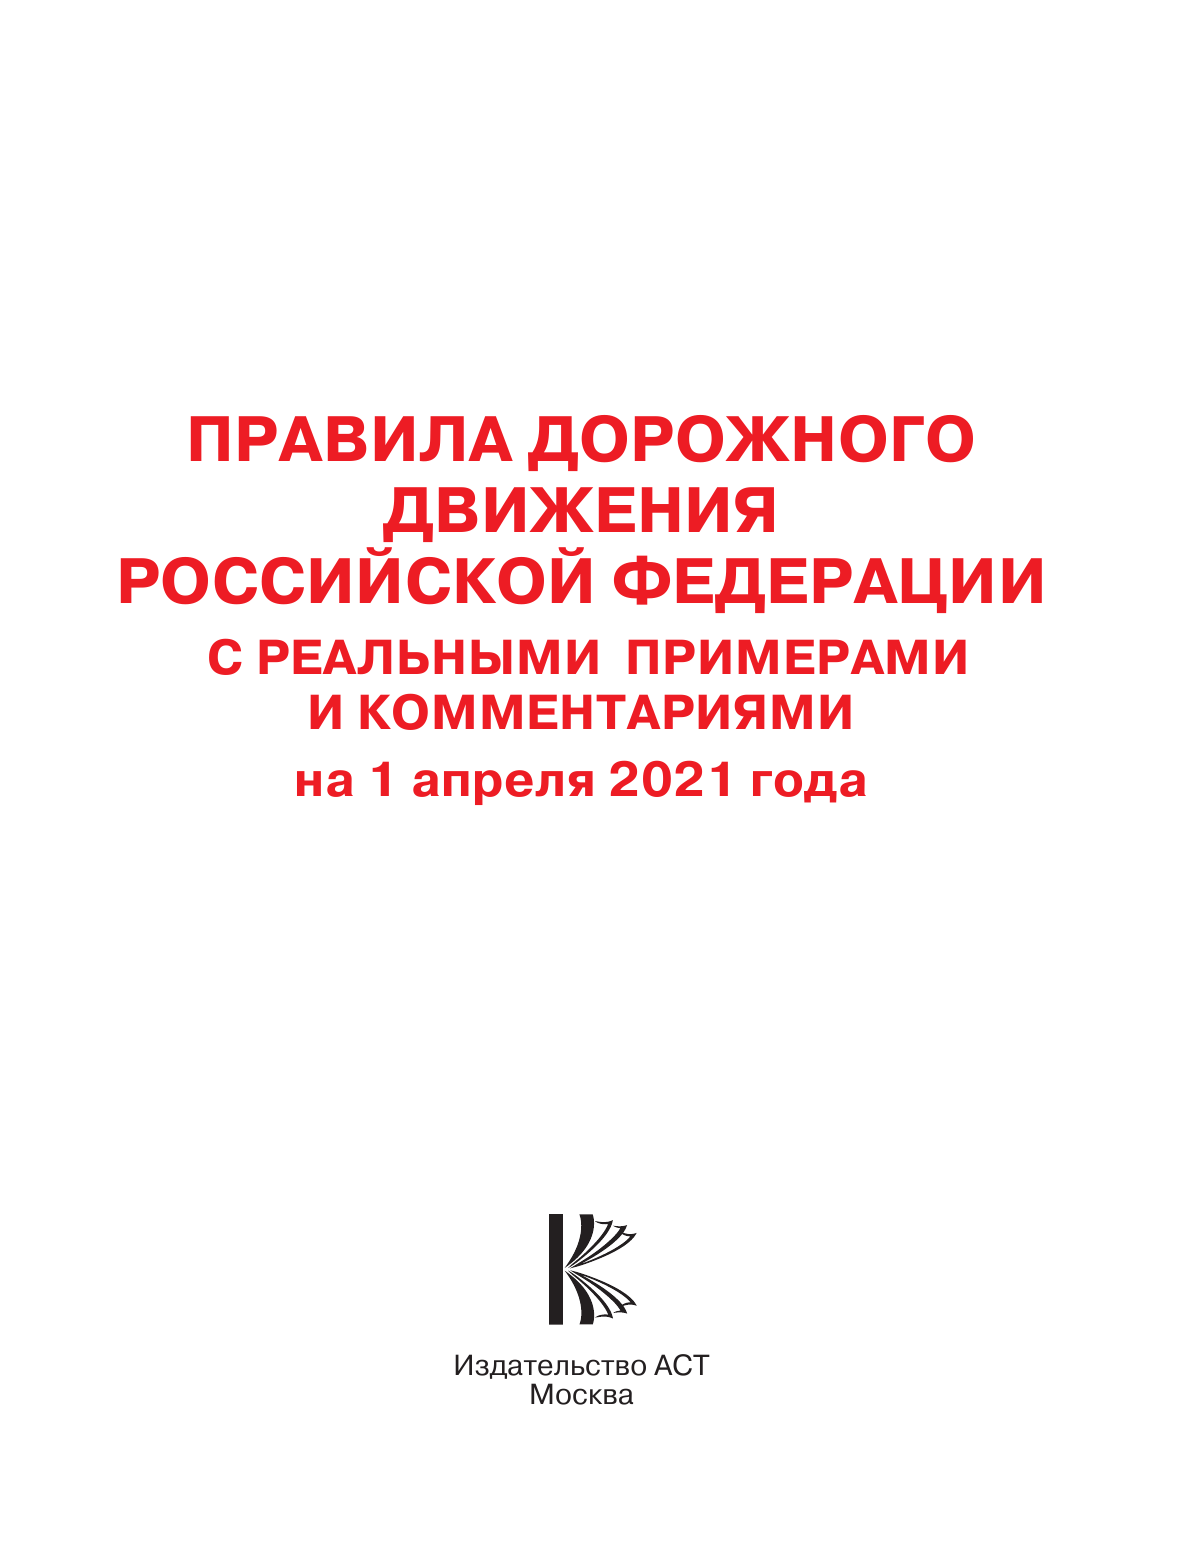  Правила дорожного движения Российской Федерации с реальными примерами и комментариями на 1 апреля 2021 года - страница 2